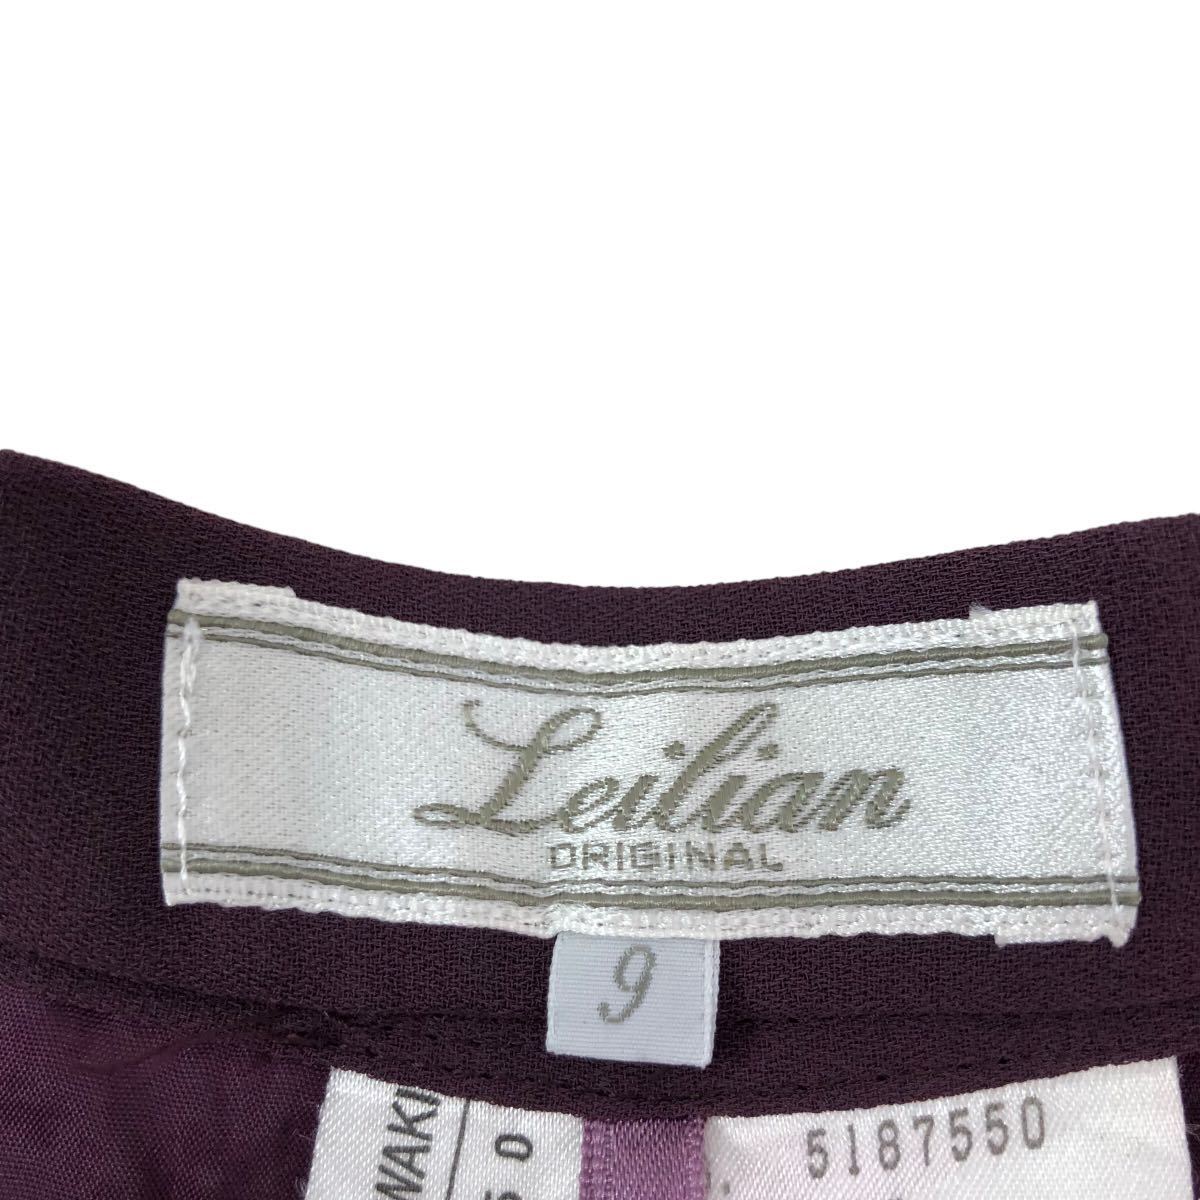 NB183 made in Japan Leilian Leilian wide pants pants trousers bottoms slit design purple purple lady's 9